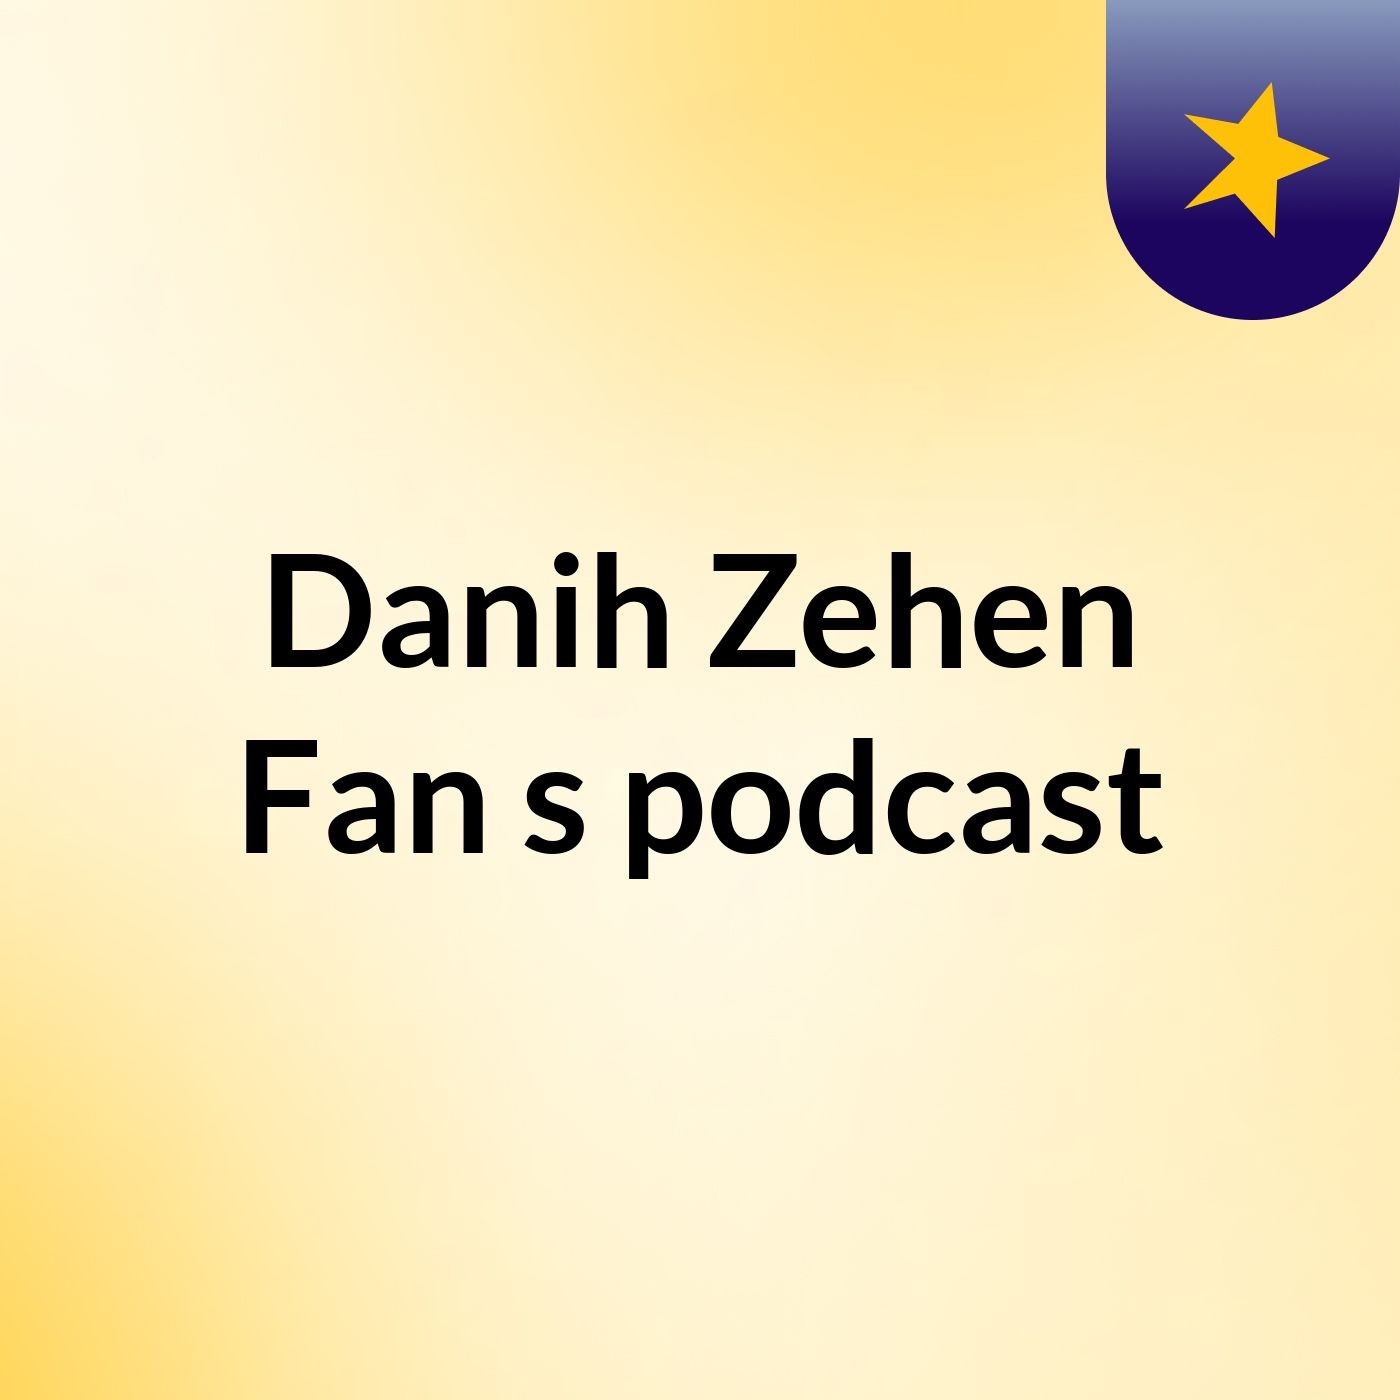 Episode 4 - Danih Zehen Fan's podcast